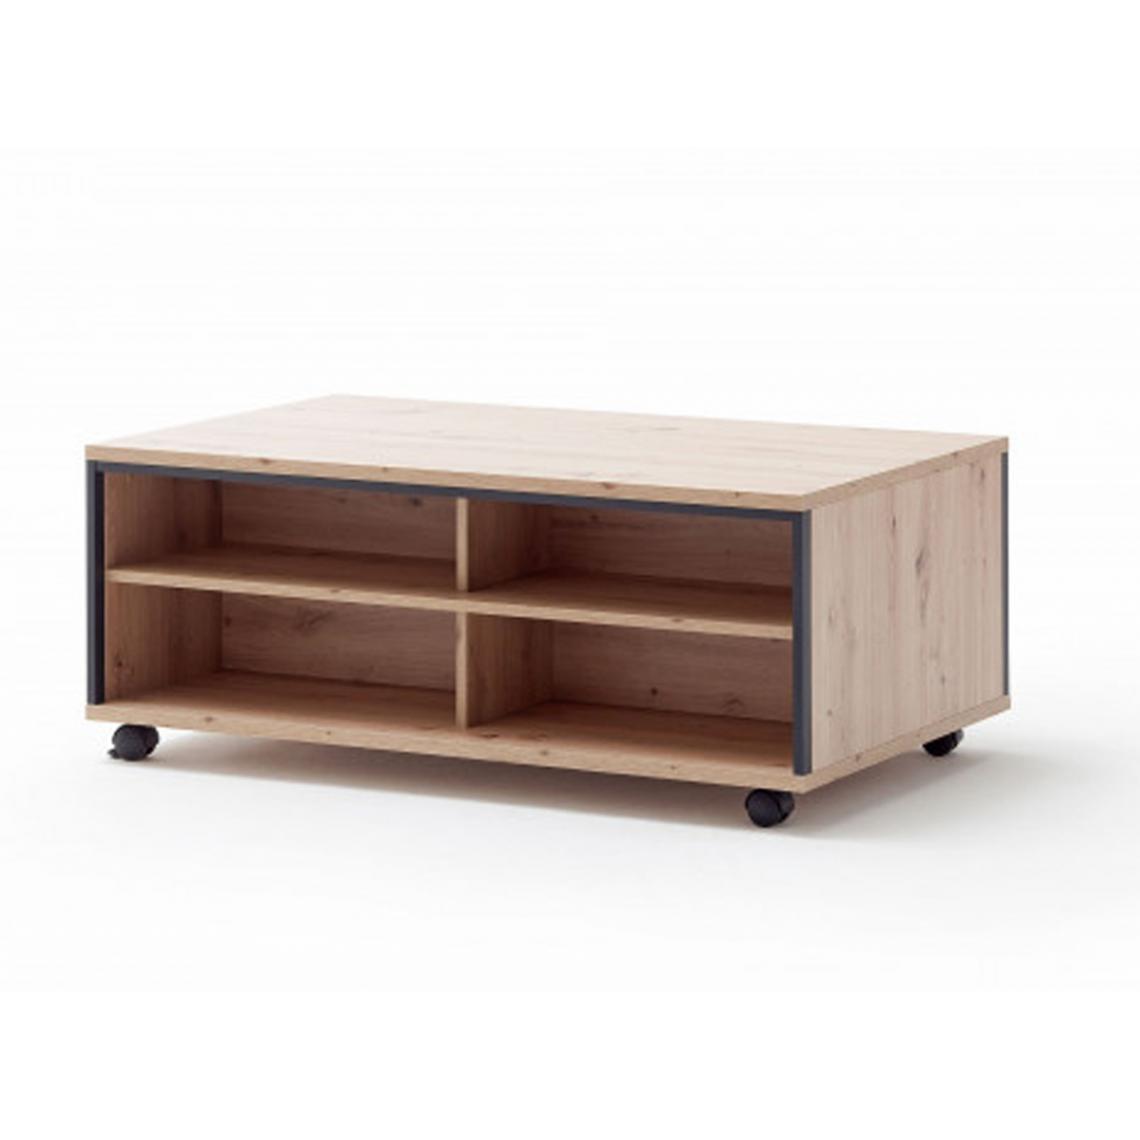 Pegane - Table basse avec rangements en bois coloris chêne sombre - L.115 x H.46 x P.70 cm - Tables basses